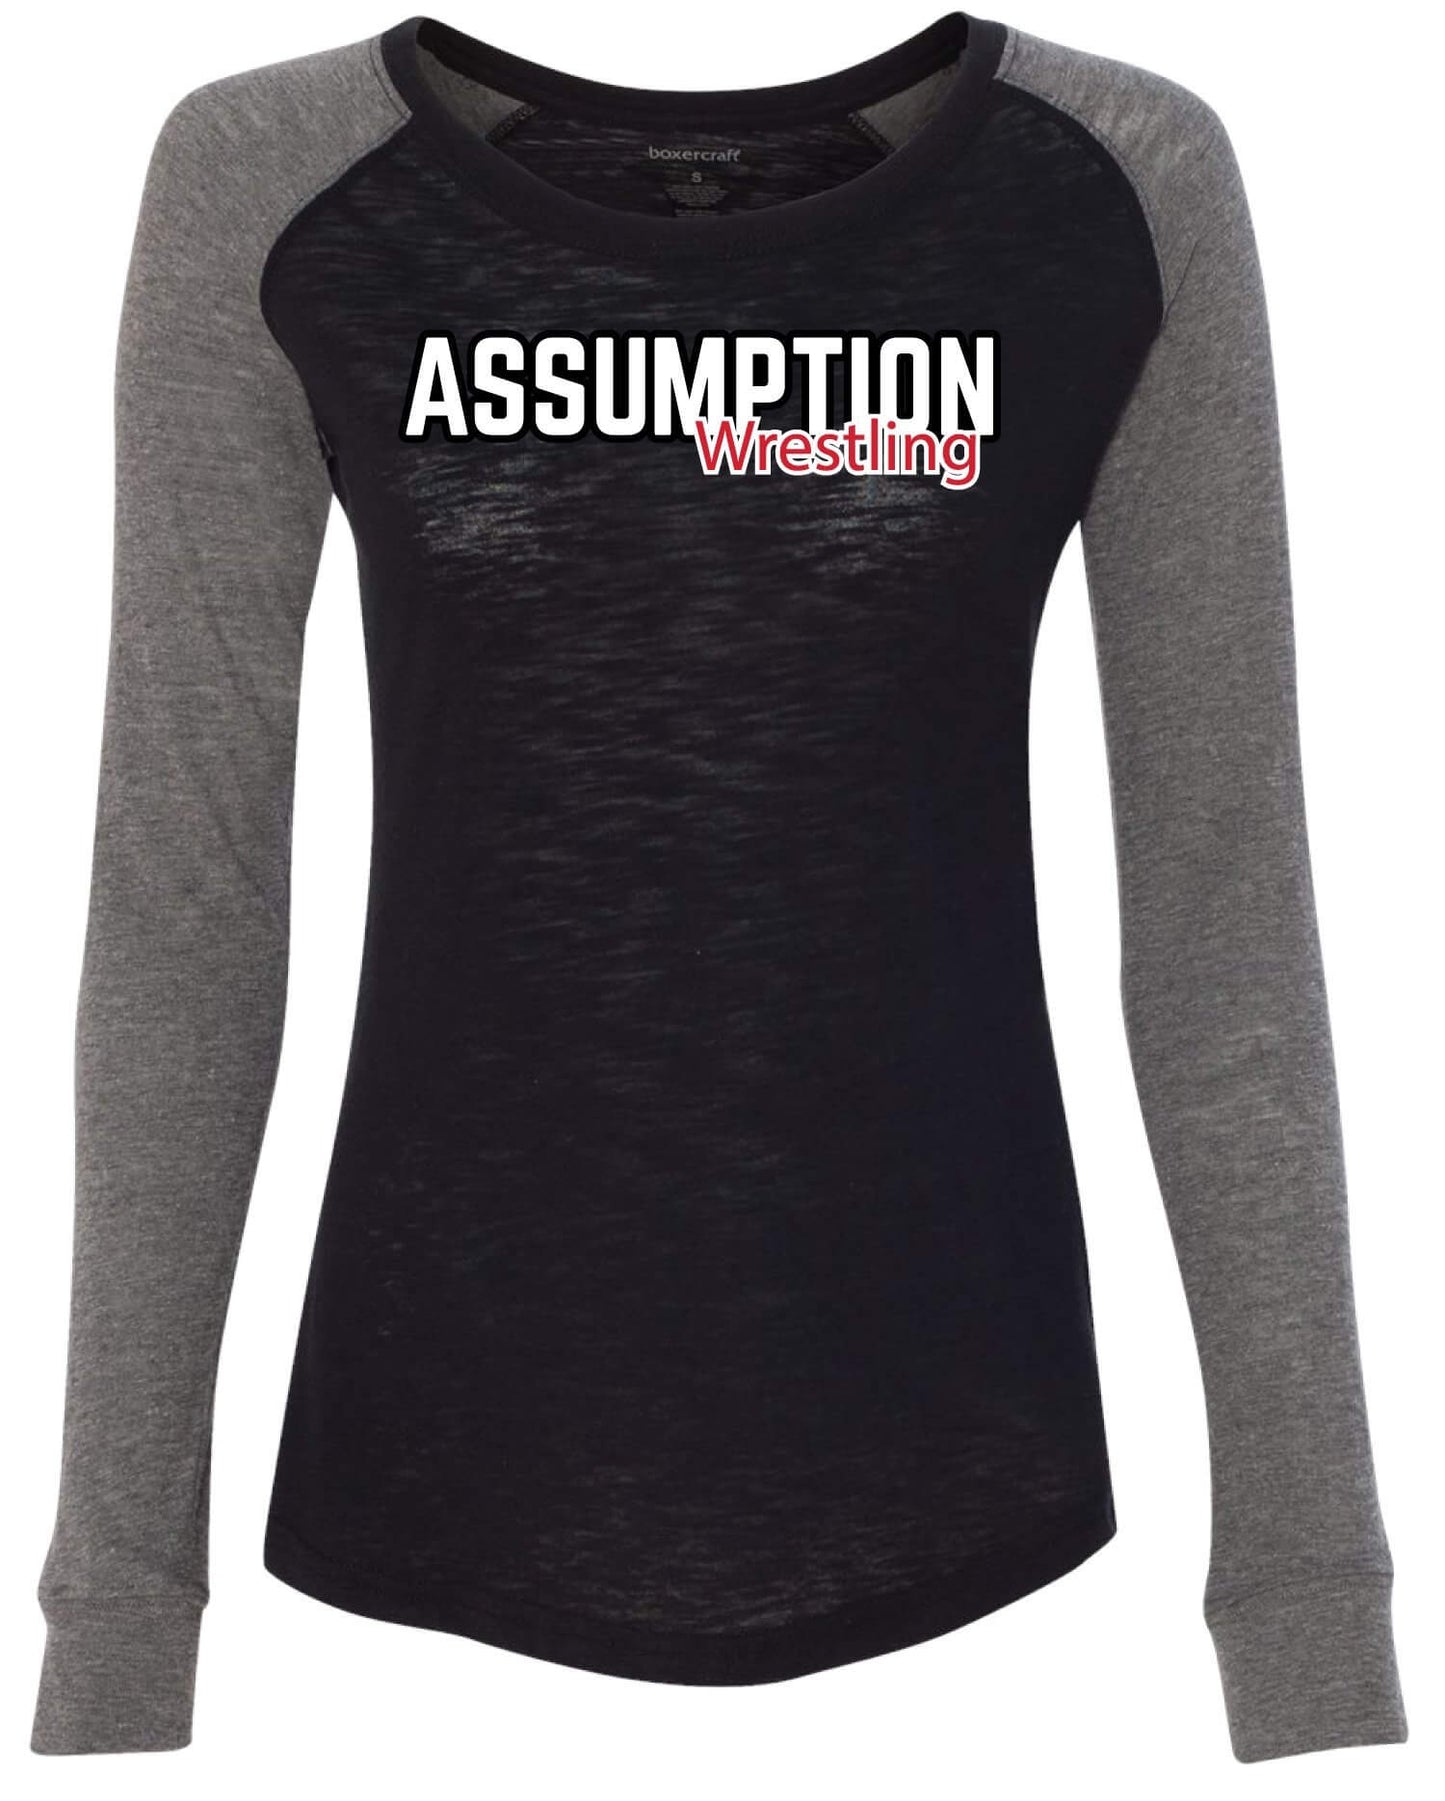 Assumption Wrestling Boxercraft Women's Preppy Patch Slub T-Shirt